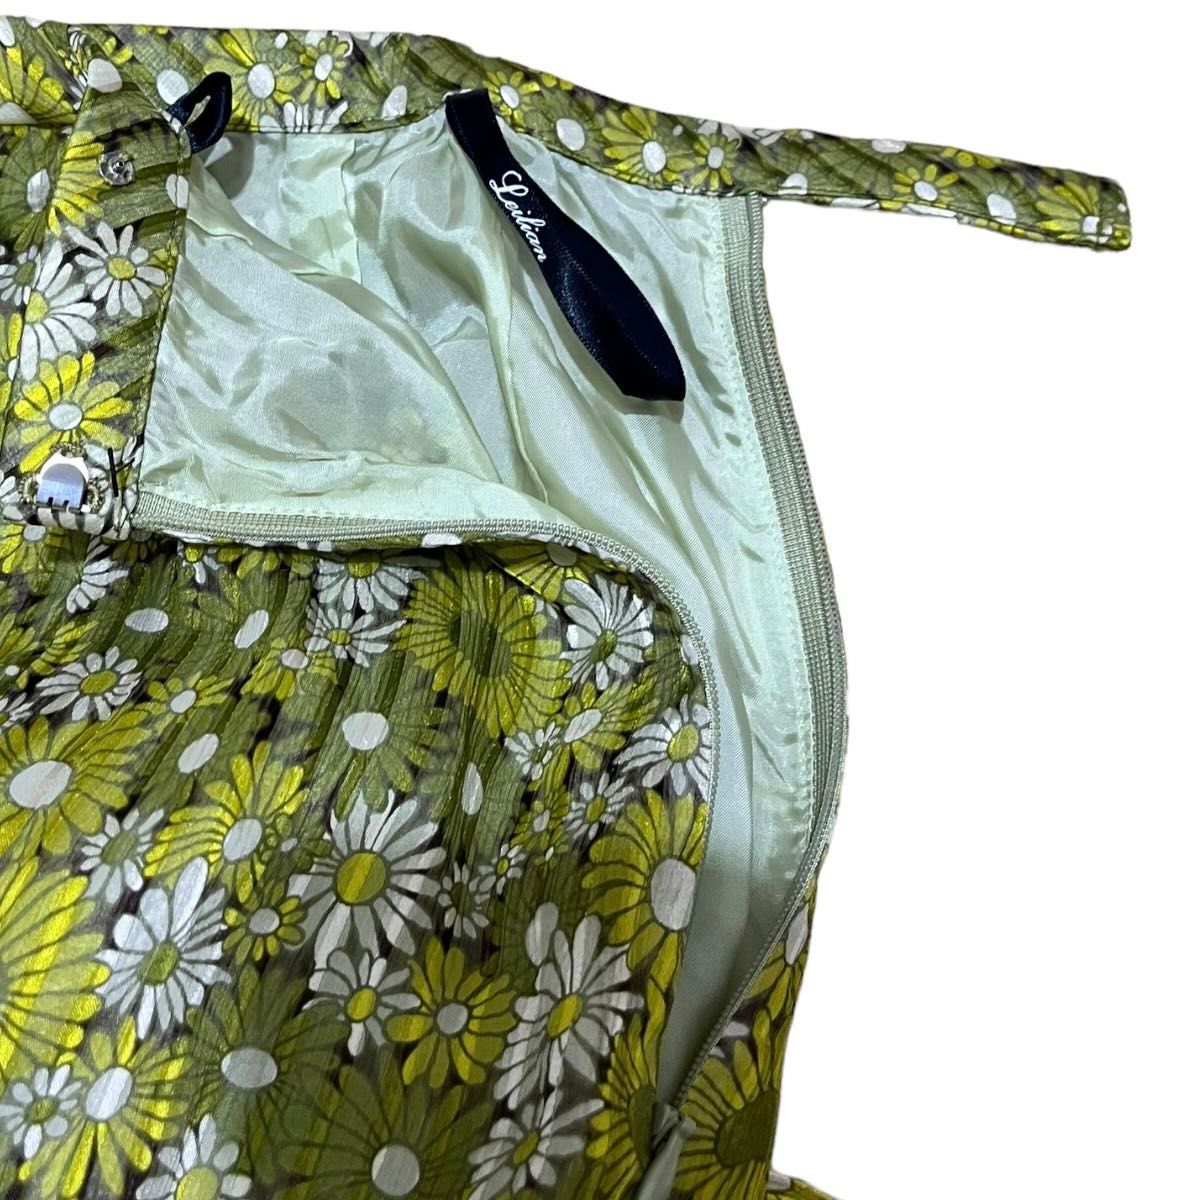 大きいサイズ　レリアン　プリーツスカート　ロングスカート　花柄　シルク100% 総柄 スカートプリーツ